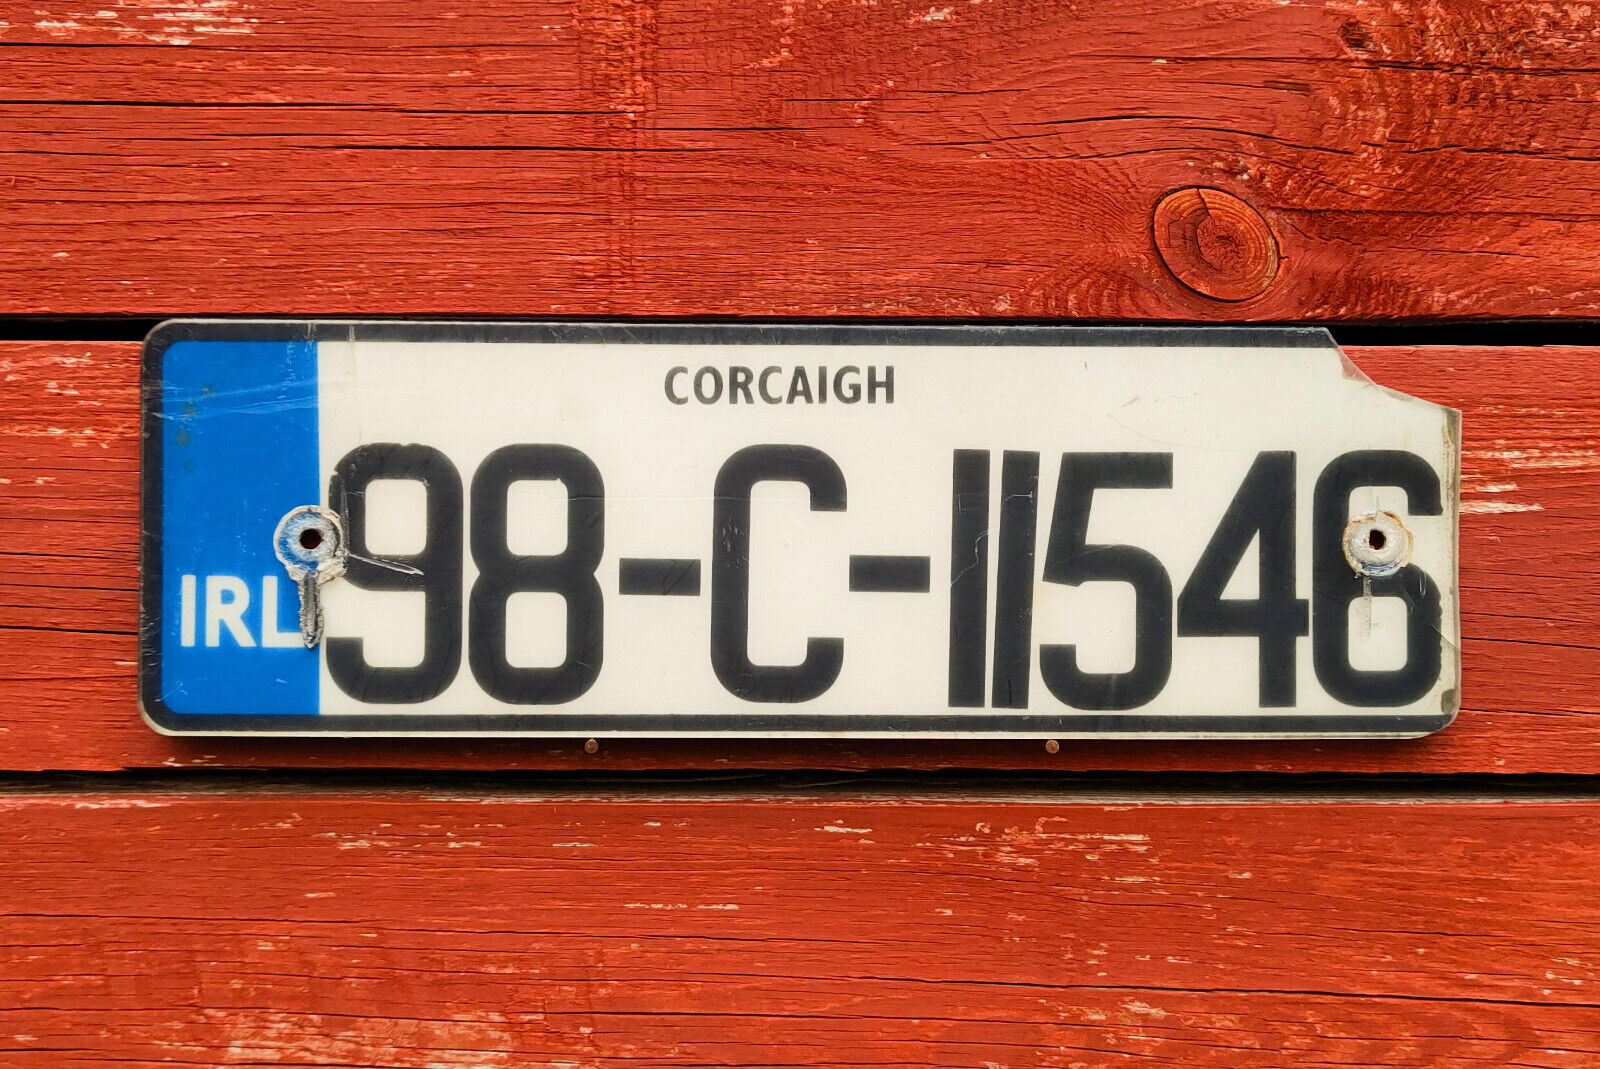 IRELAND/IRISH License Plate from Europe